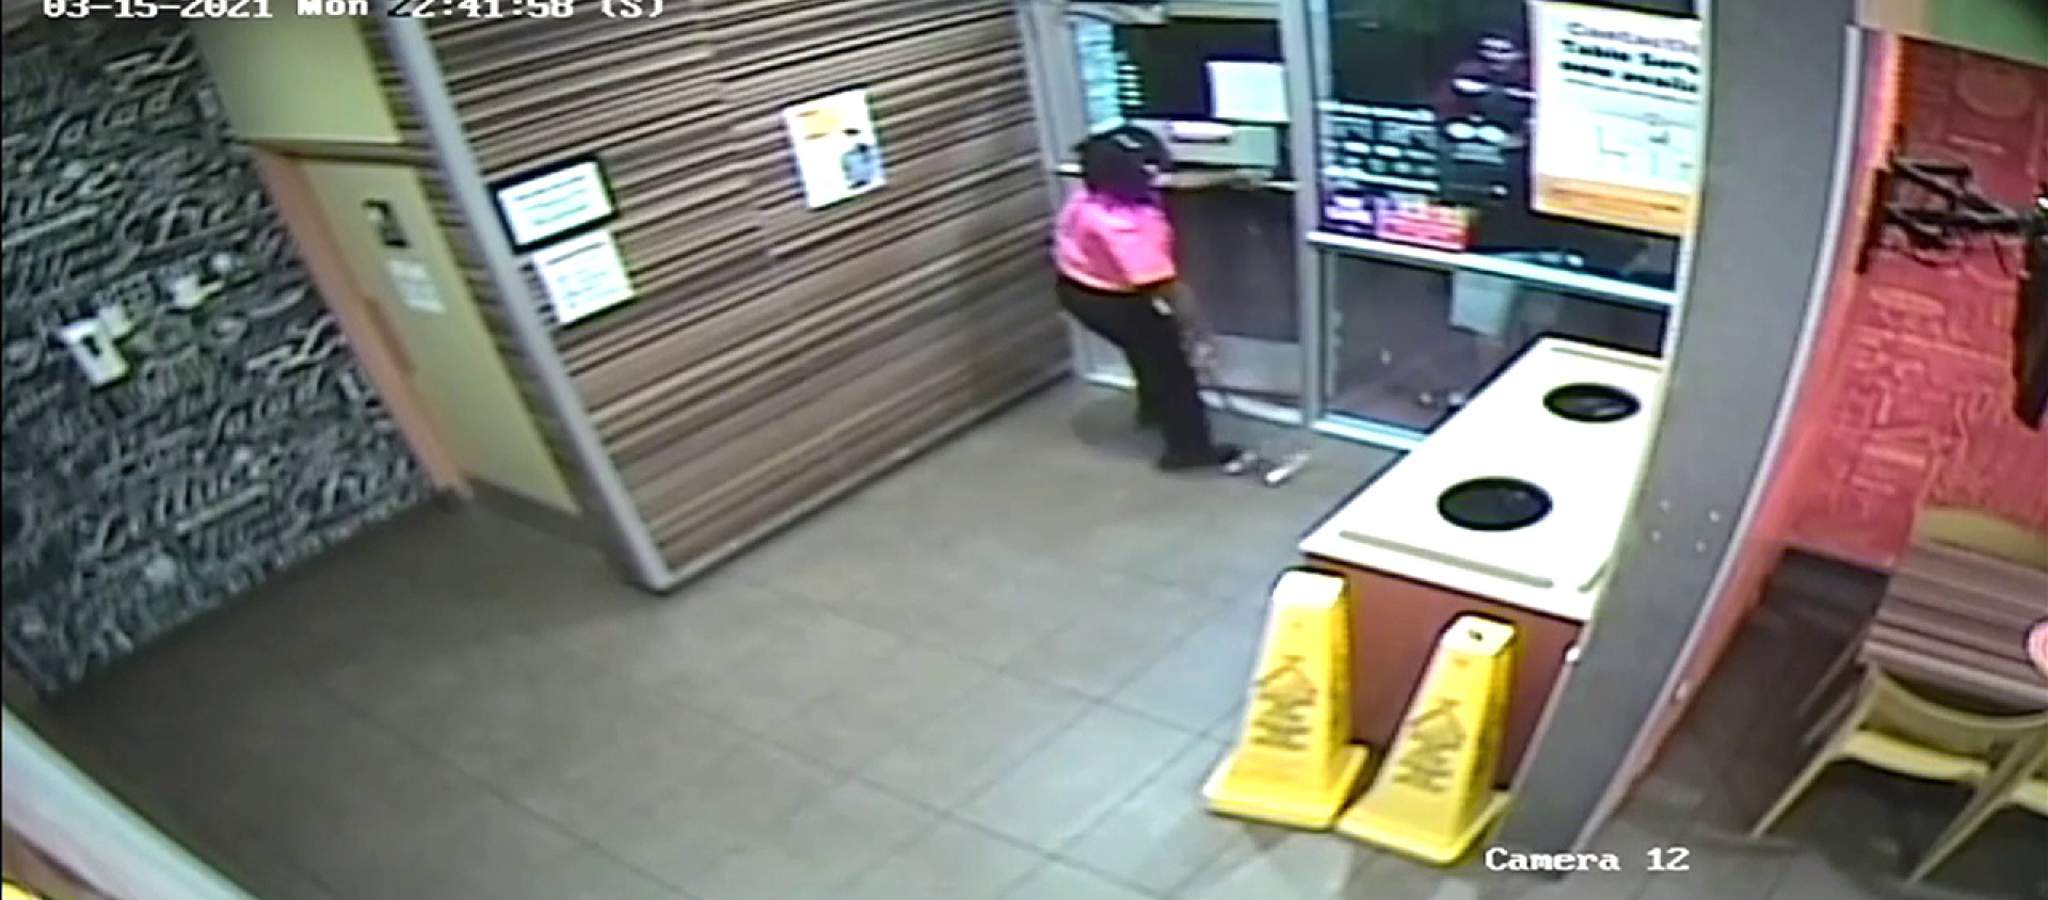 Gerente de un McDonalds dice que cliente la atacó porque se demoró con su orden